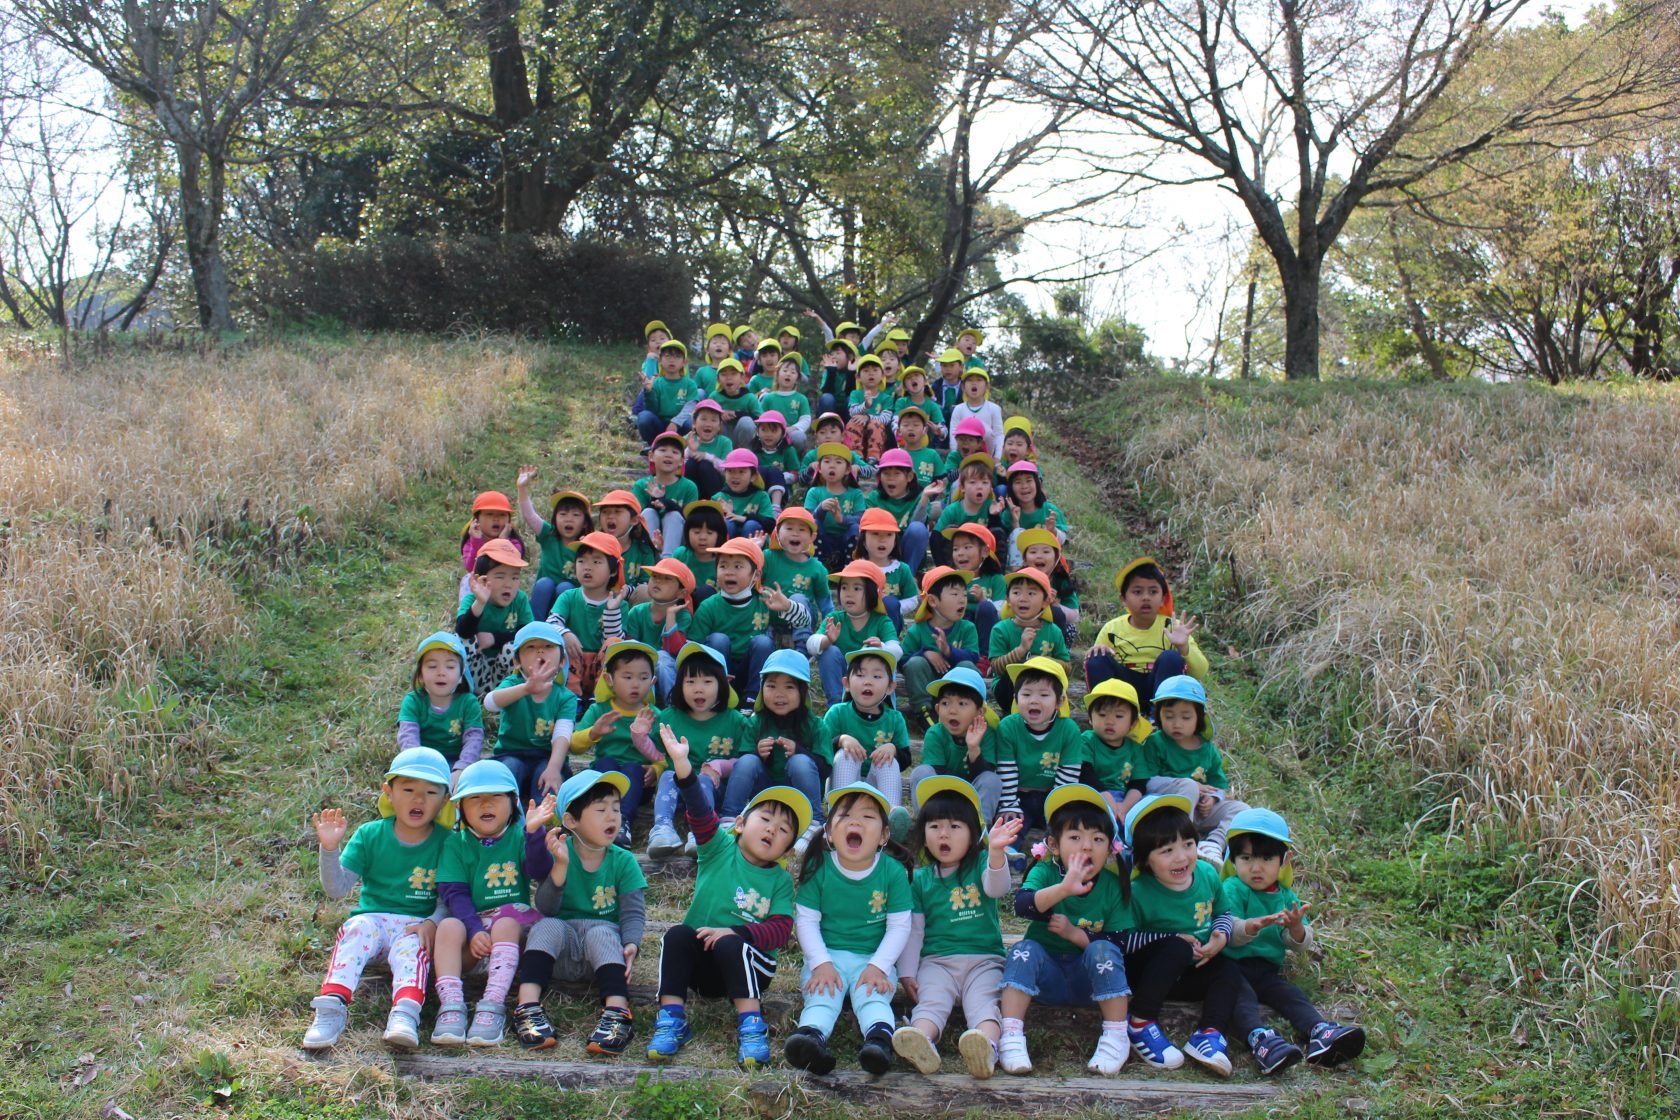 熊本インターナショナルスクール,ヒルトップインターナショナルスクール,熊本英語幼稚園,熊本英語保育園